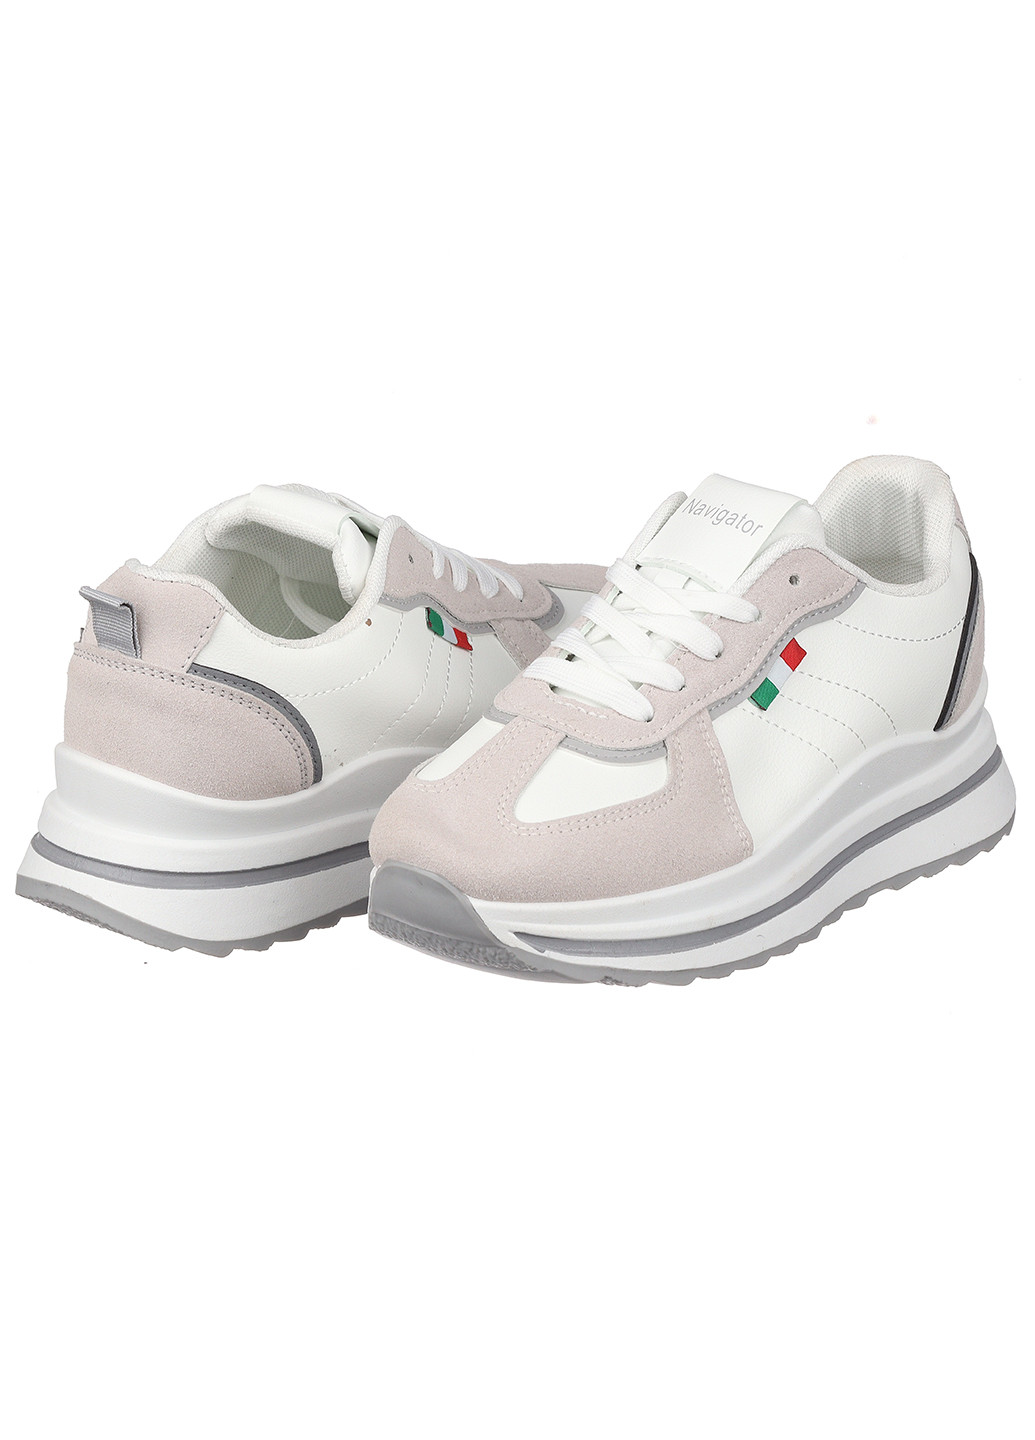 Белые демисезонные женские кроссовки b7025-1 Navigator